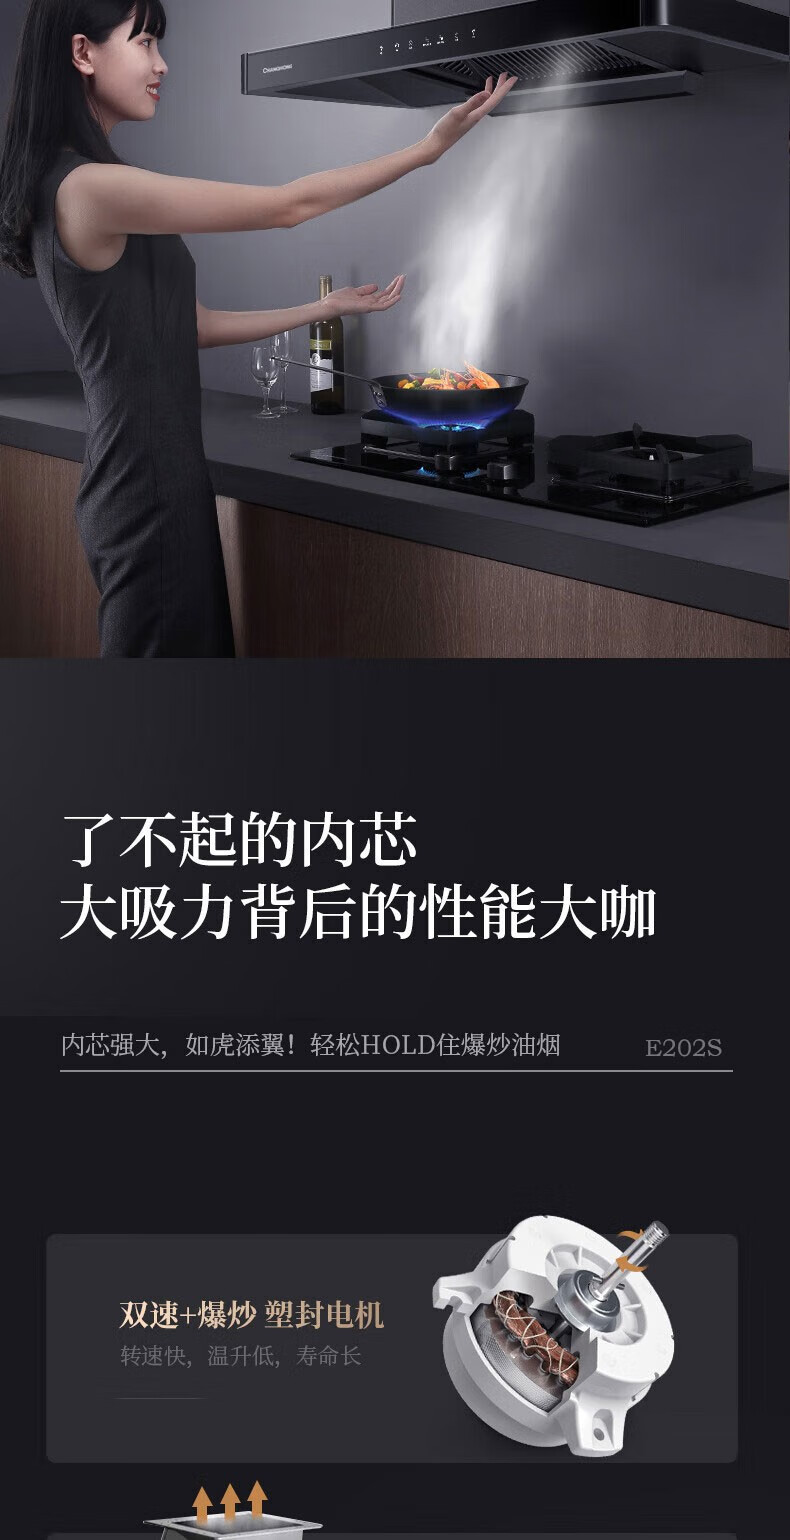 长虹/CHANGHONG 欧式家用厨房抽油烟机